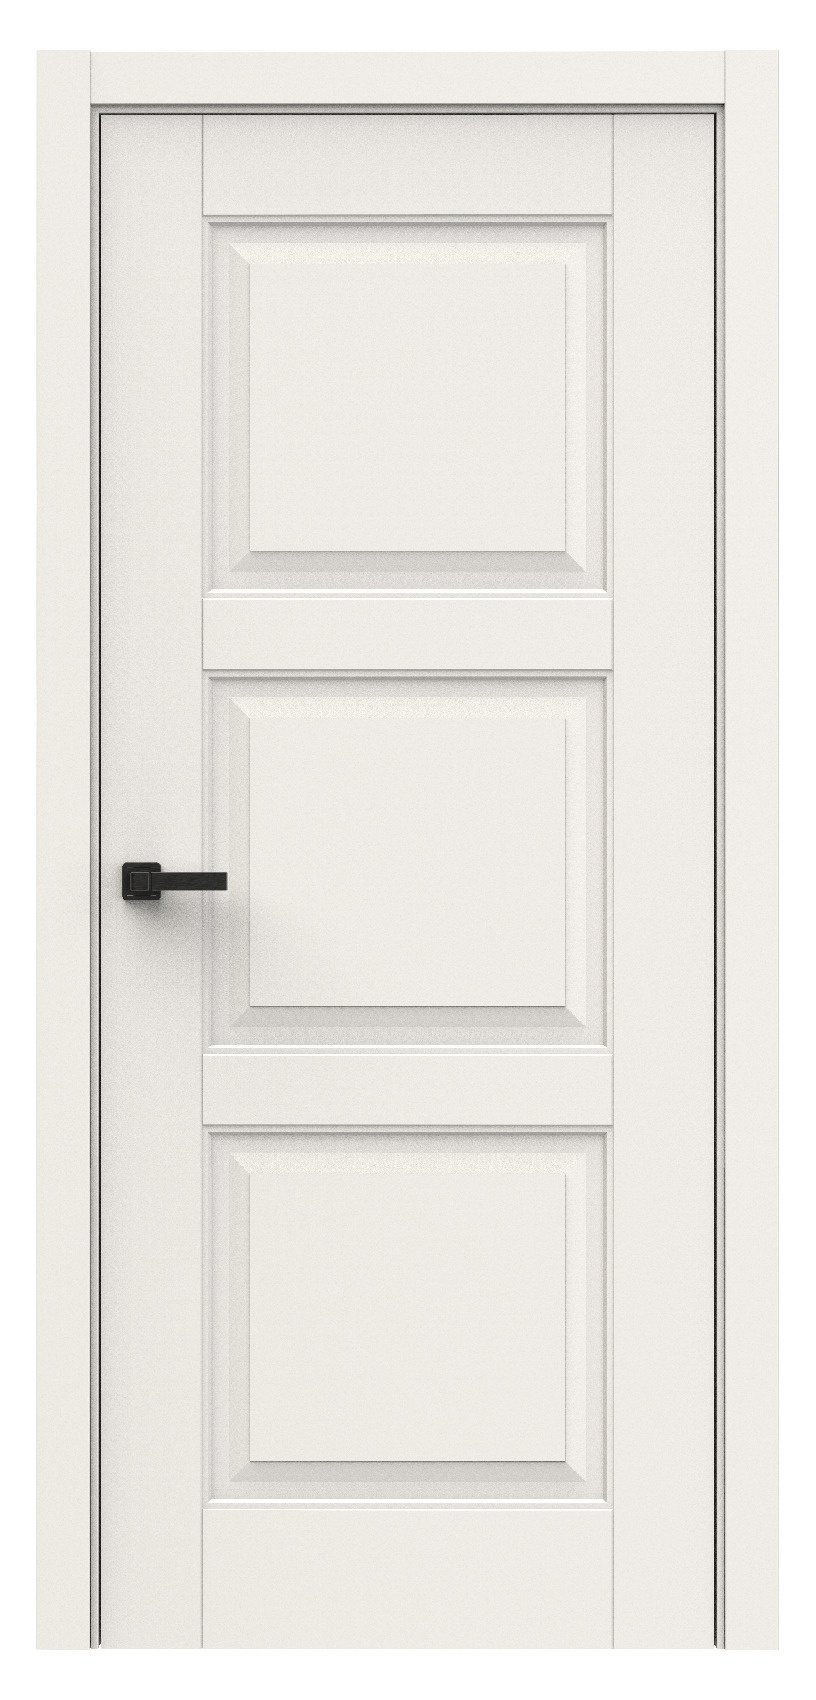 Questdoors Межкомнатная дверь QL10, арт. 18010 - фото №1